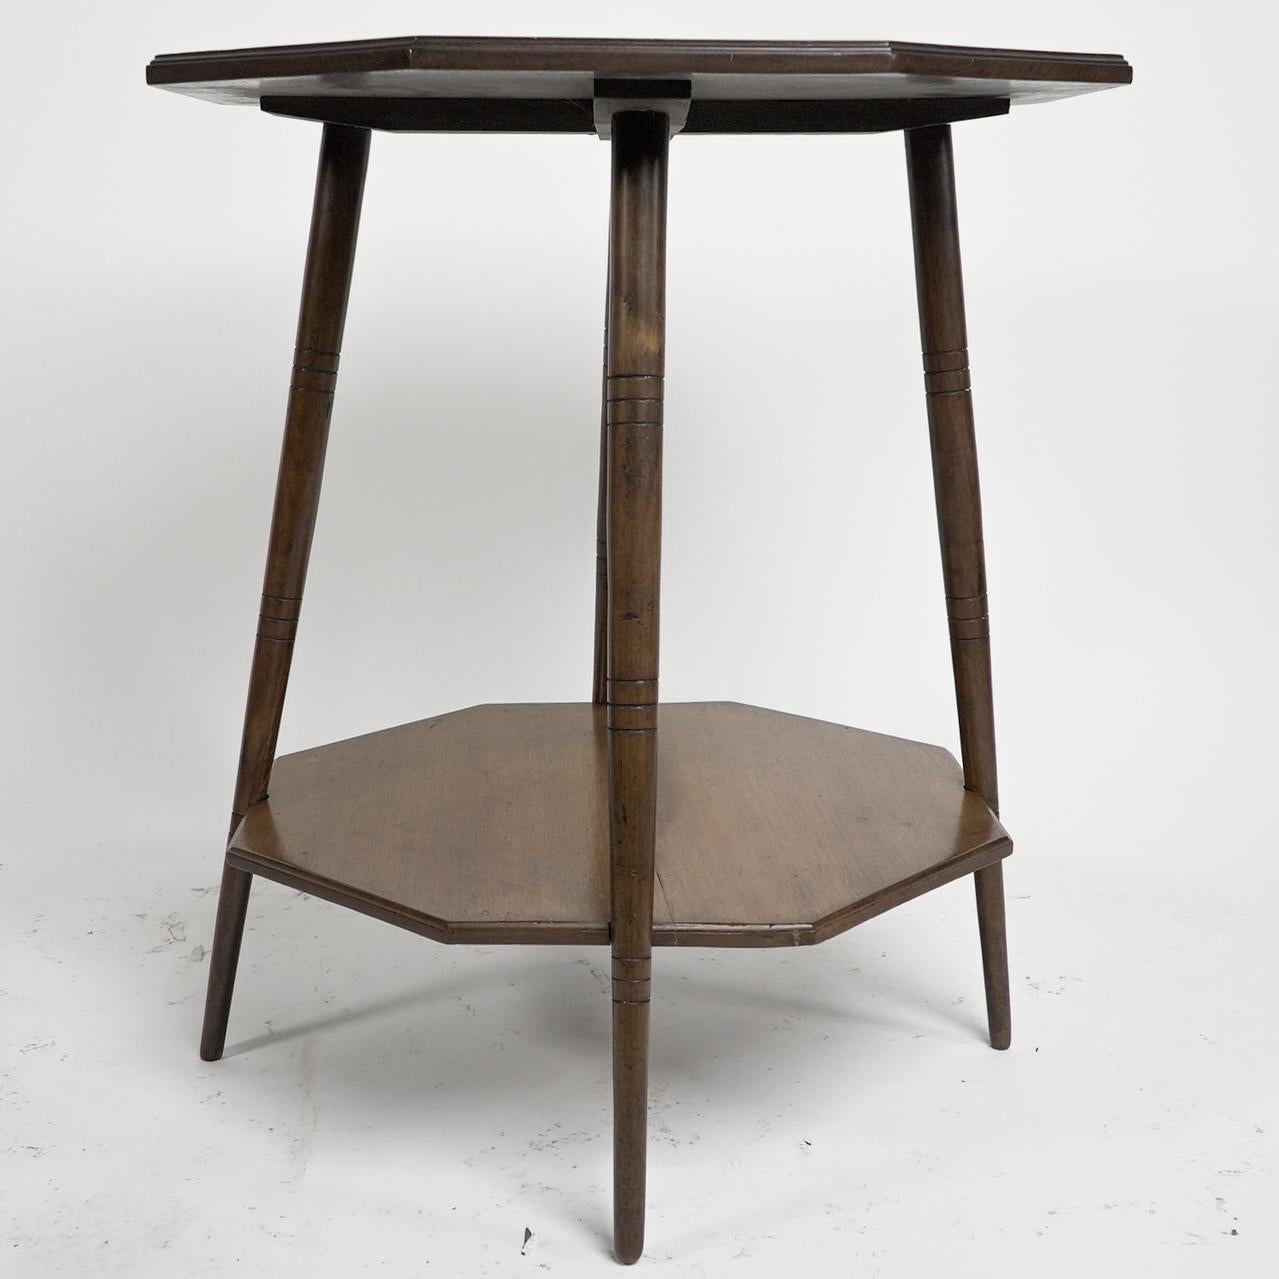 Anglais Collinson & Lock. Table octogonale à deux niveaux de l'Aesthetic Movement sur des pieds tournés en anneau. en vente